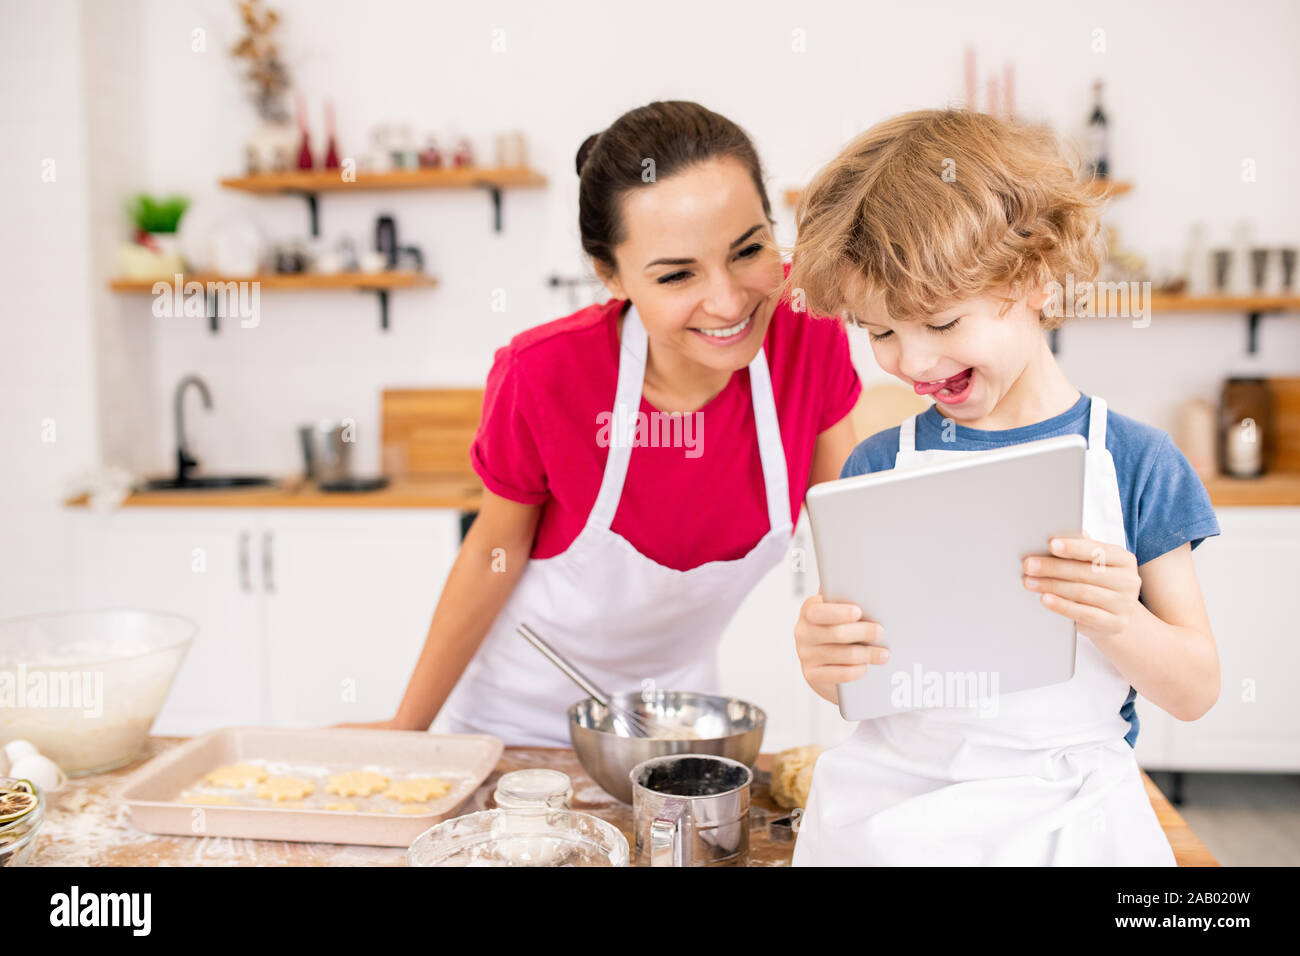 Adorable fröhliches Kind mit Touchpad, seine Mutter video Rezept der etwas wirklich lecker angezeigt, während Sie was zu kochen Stockfoto